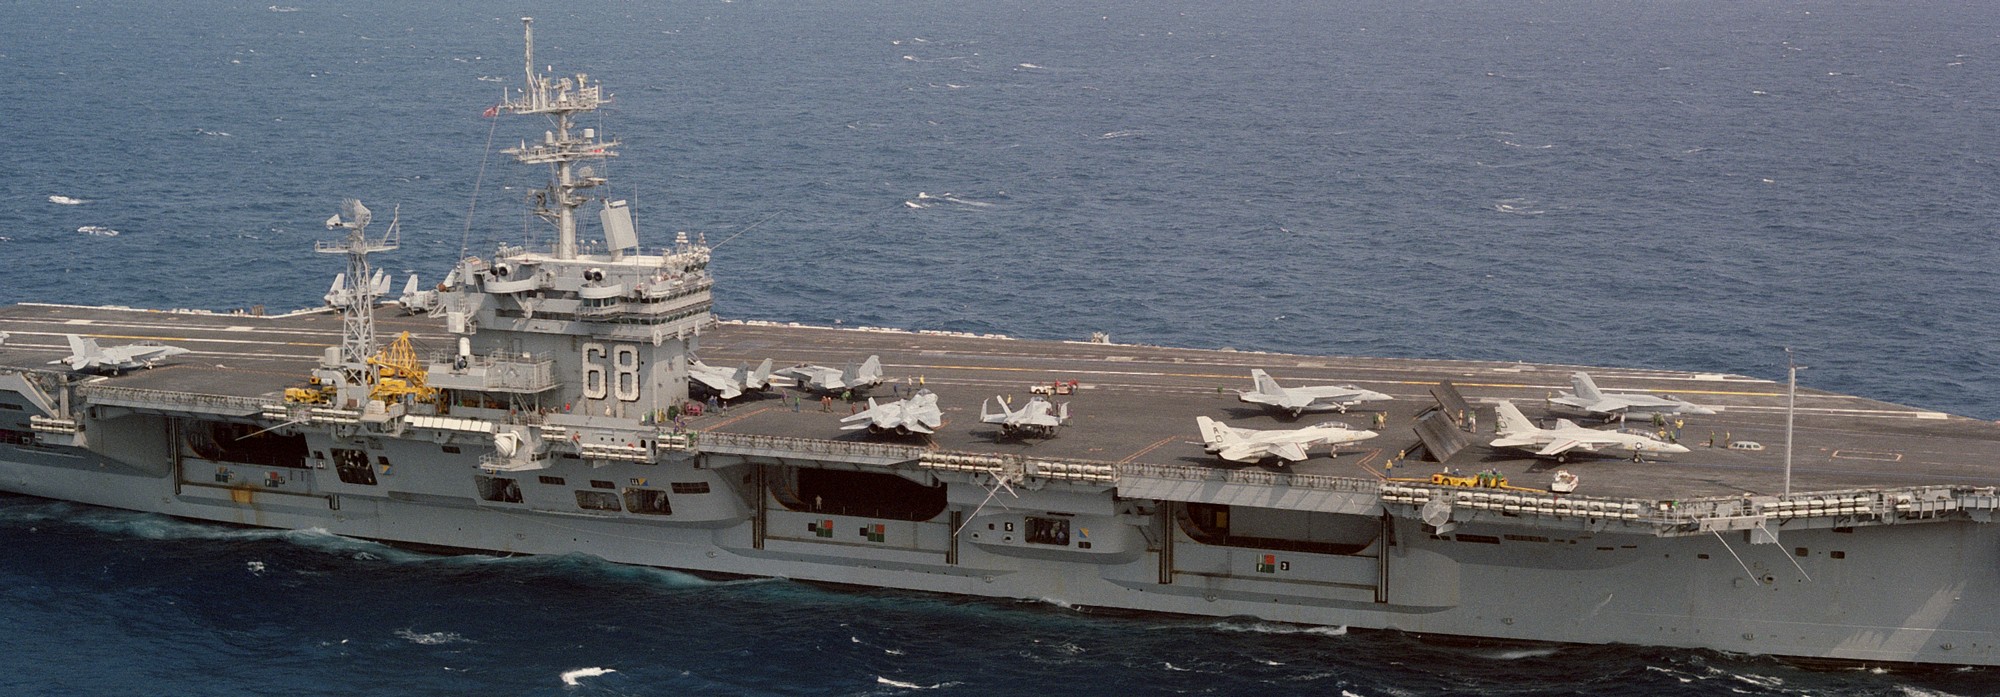 cvn-68 uss nimitz aircraft carrier us navy fleet replacement squadron frs 45